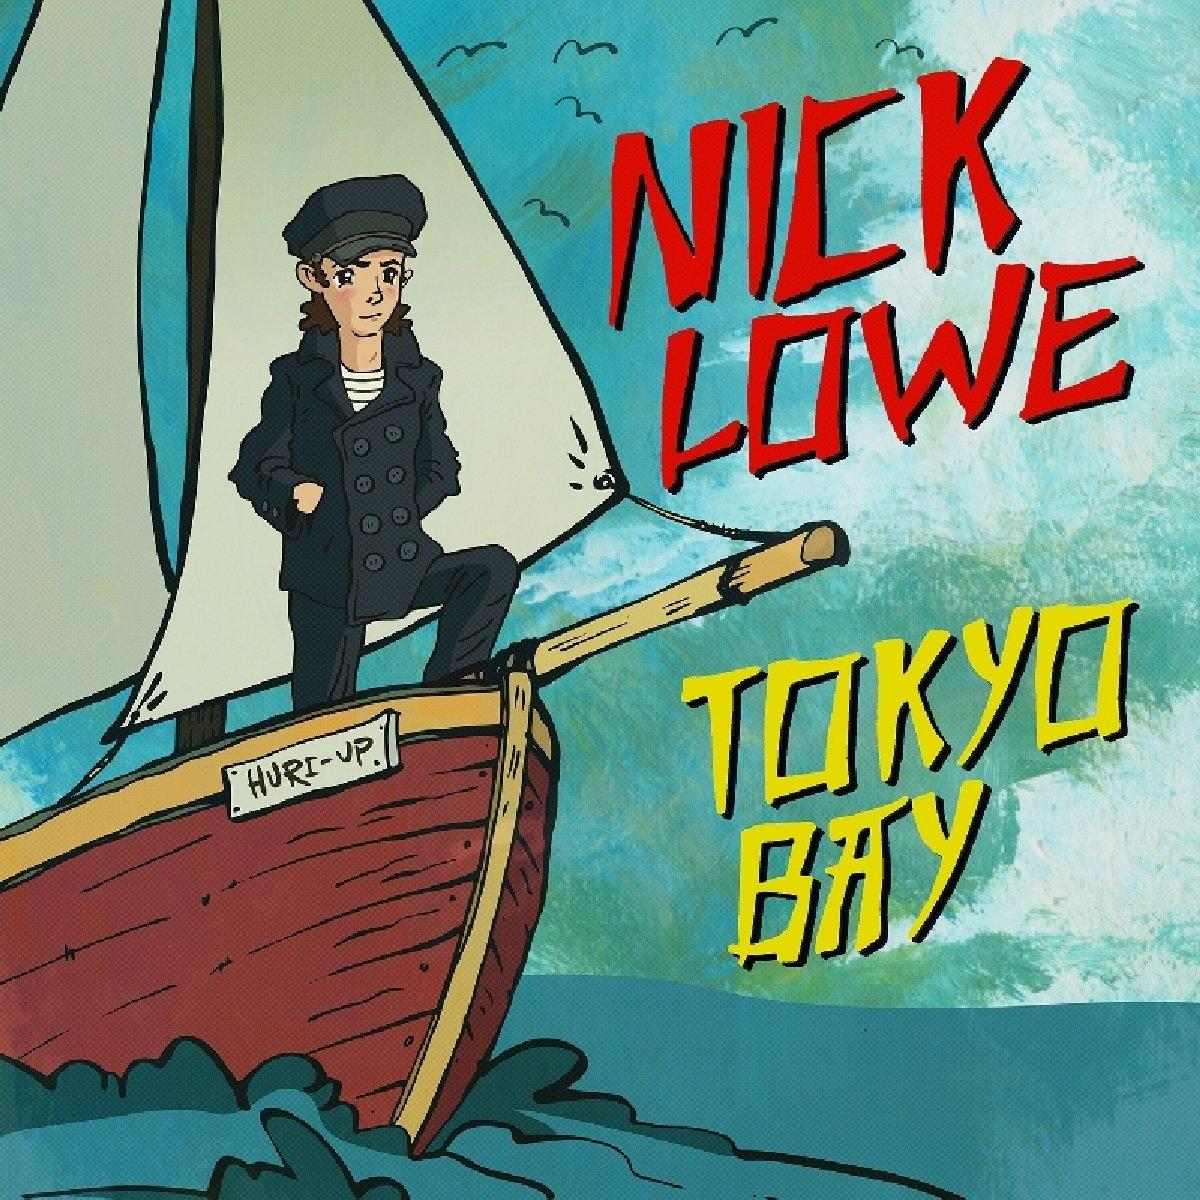 Nick Lowe (inkl.Download (Vinyl) - Bay/Crying - Tokyo Code) Inside